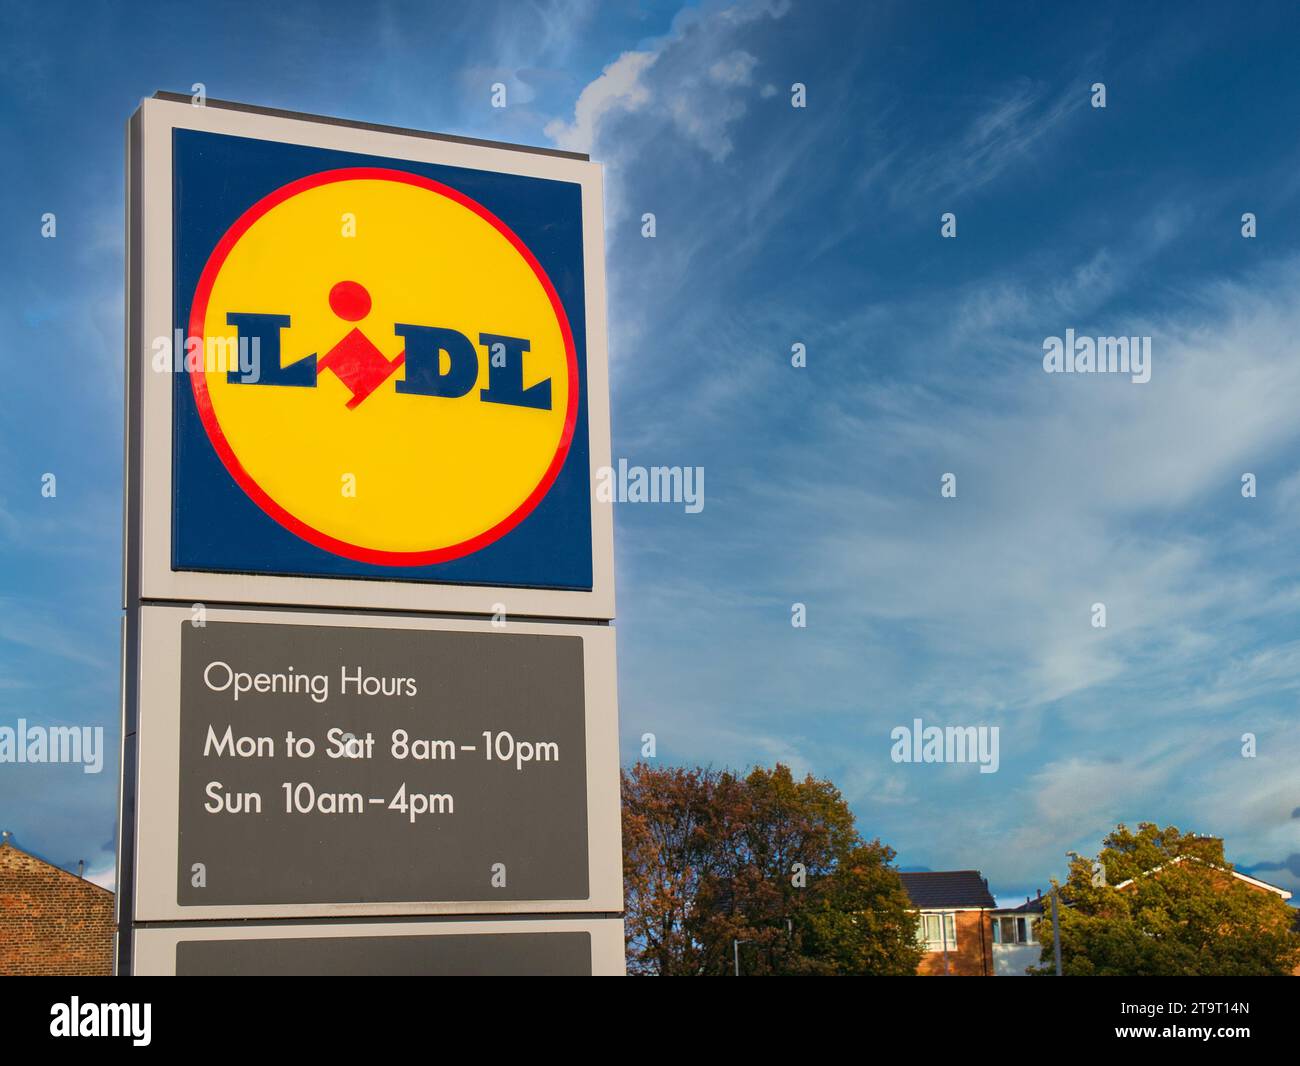 Firmenschilder vor einem Lidl-Supermarkt in Großbritannien. Das Schild enthält das gelbe, rote und blaue Firmenlogo sowie Angaben zu den Öffnungszeiten. Stockfoto